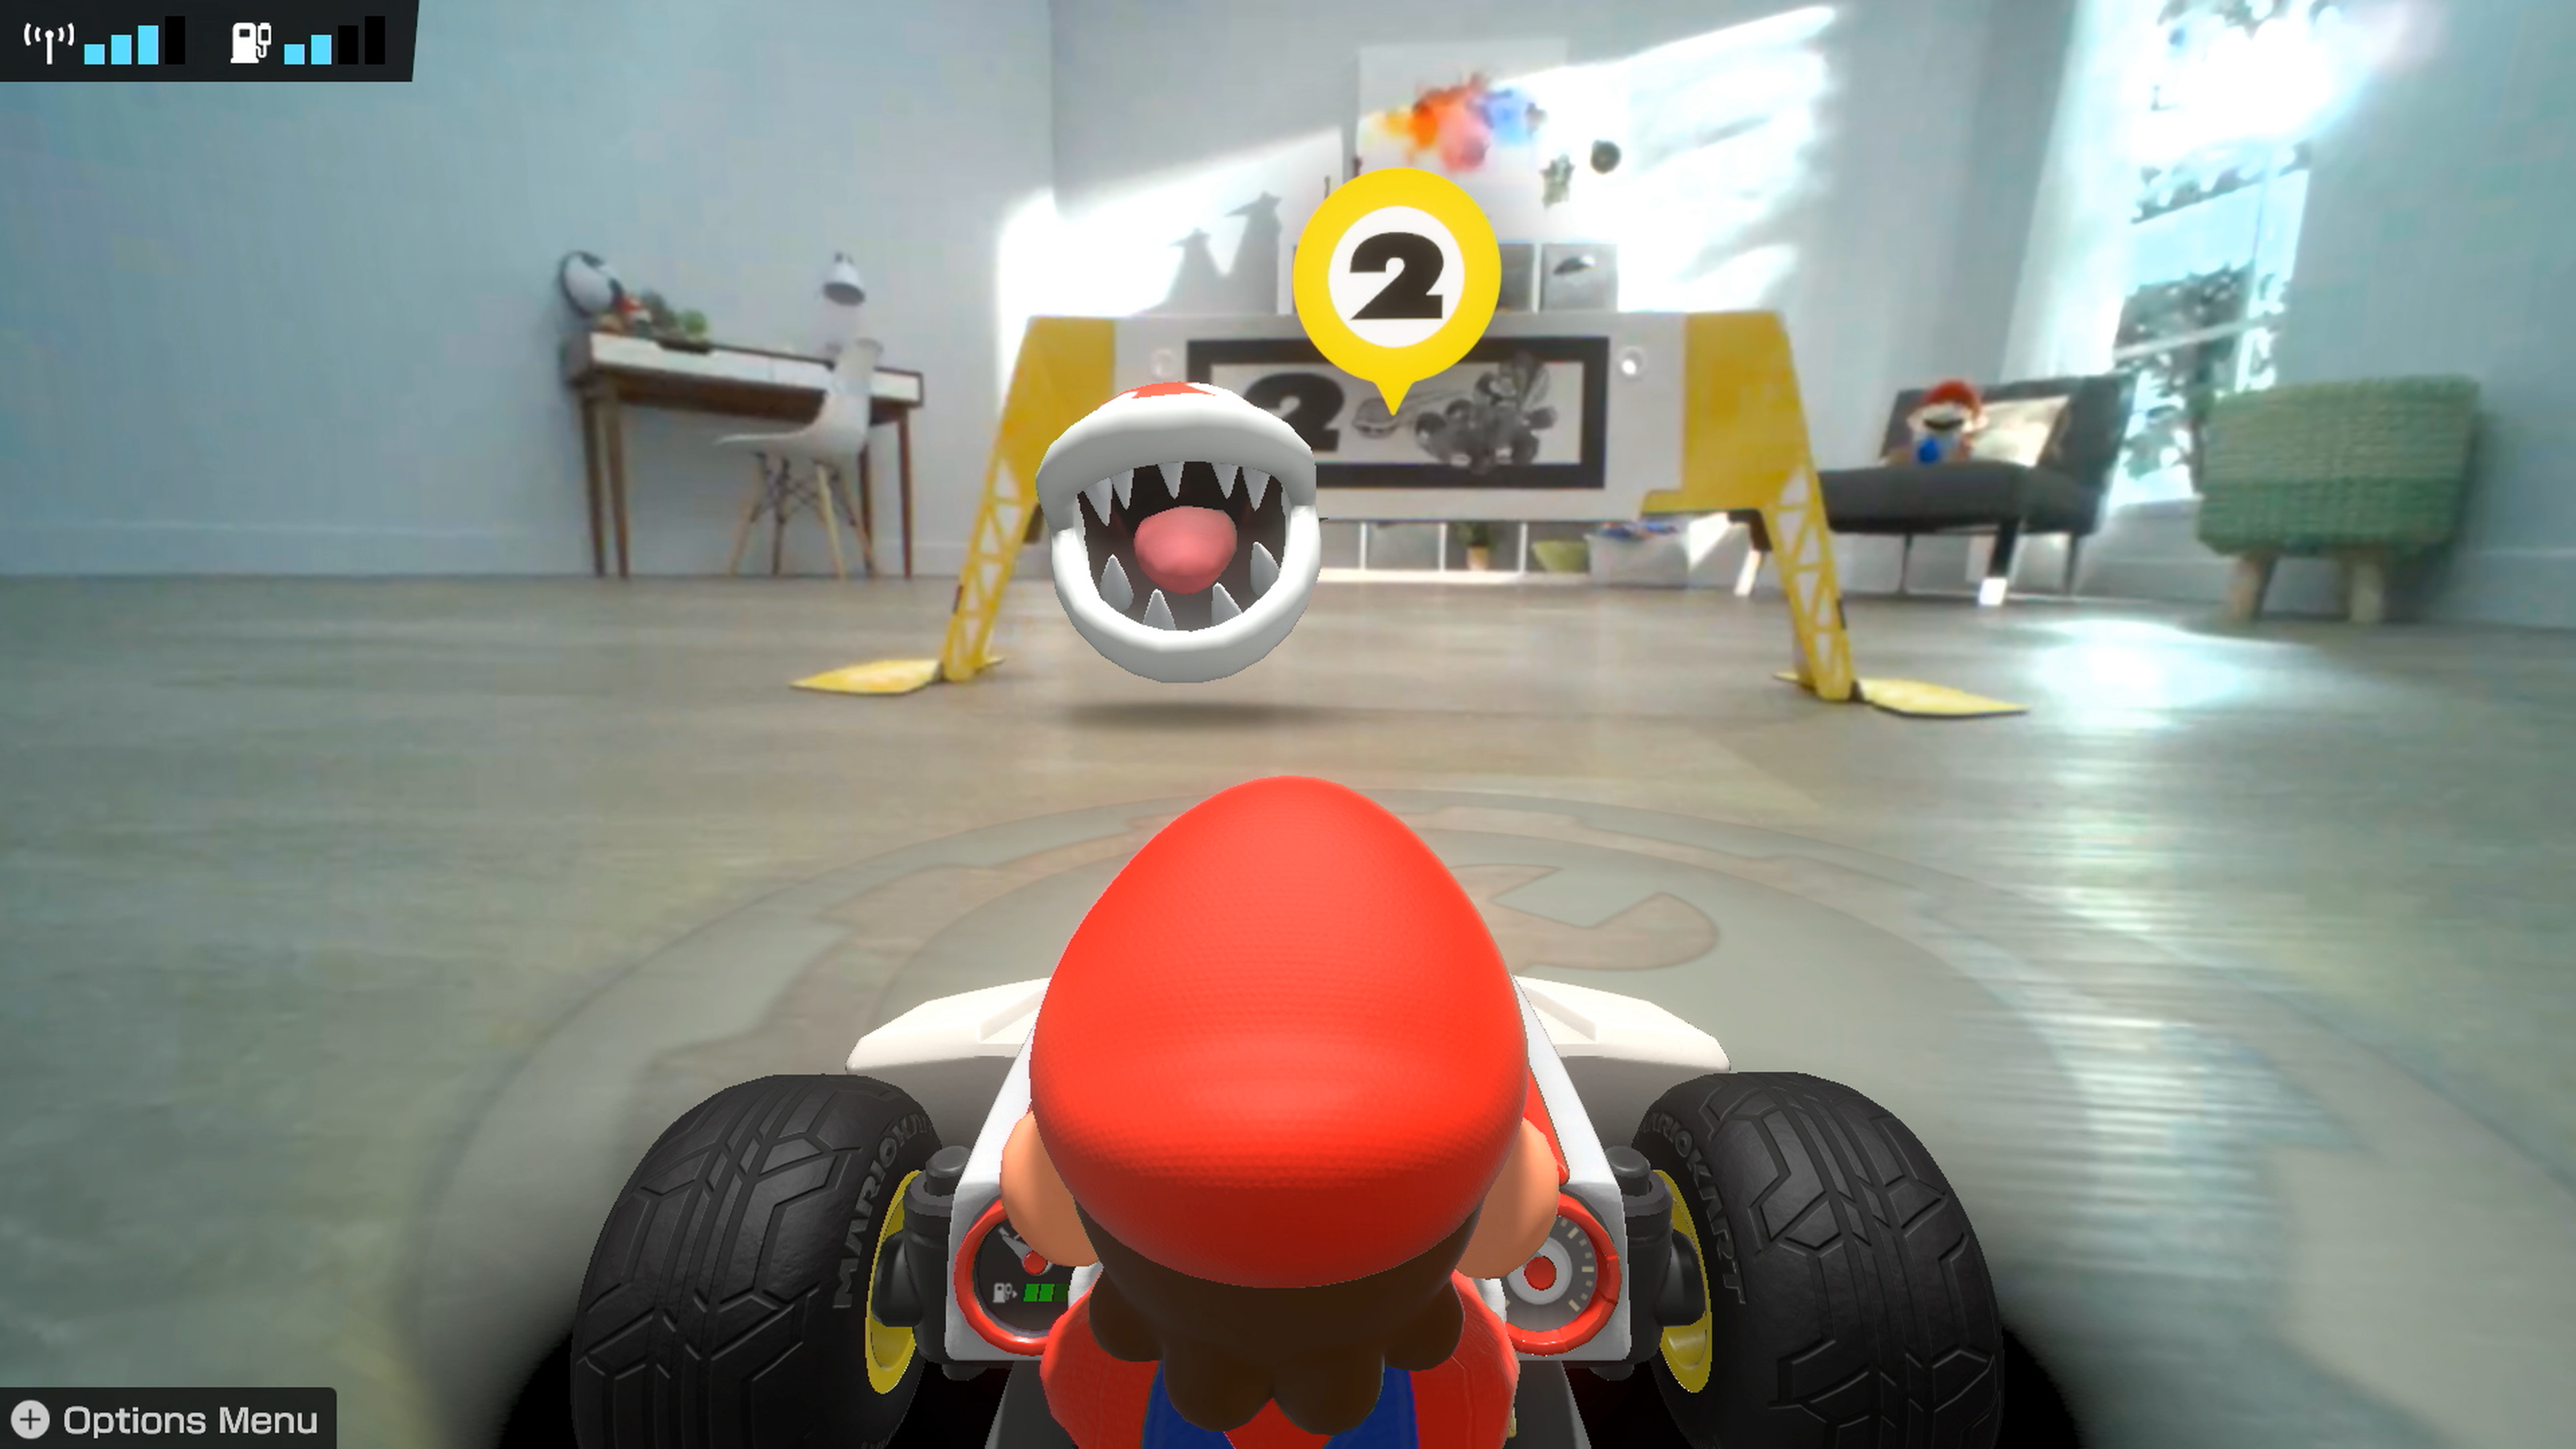 Mario Kart Live Home Circuit, análisis: review con características, precio  y especifi